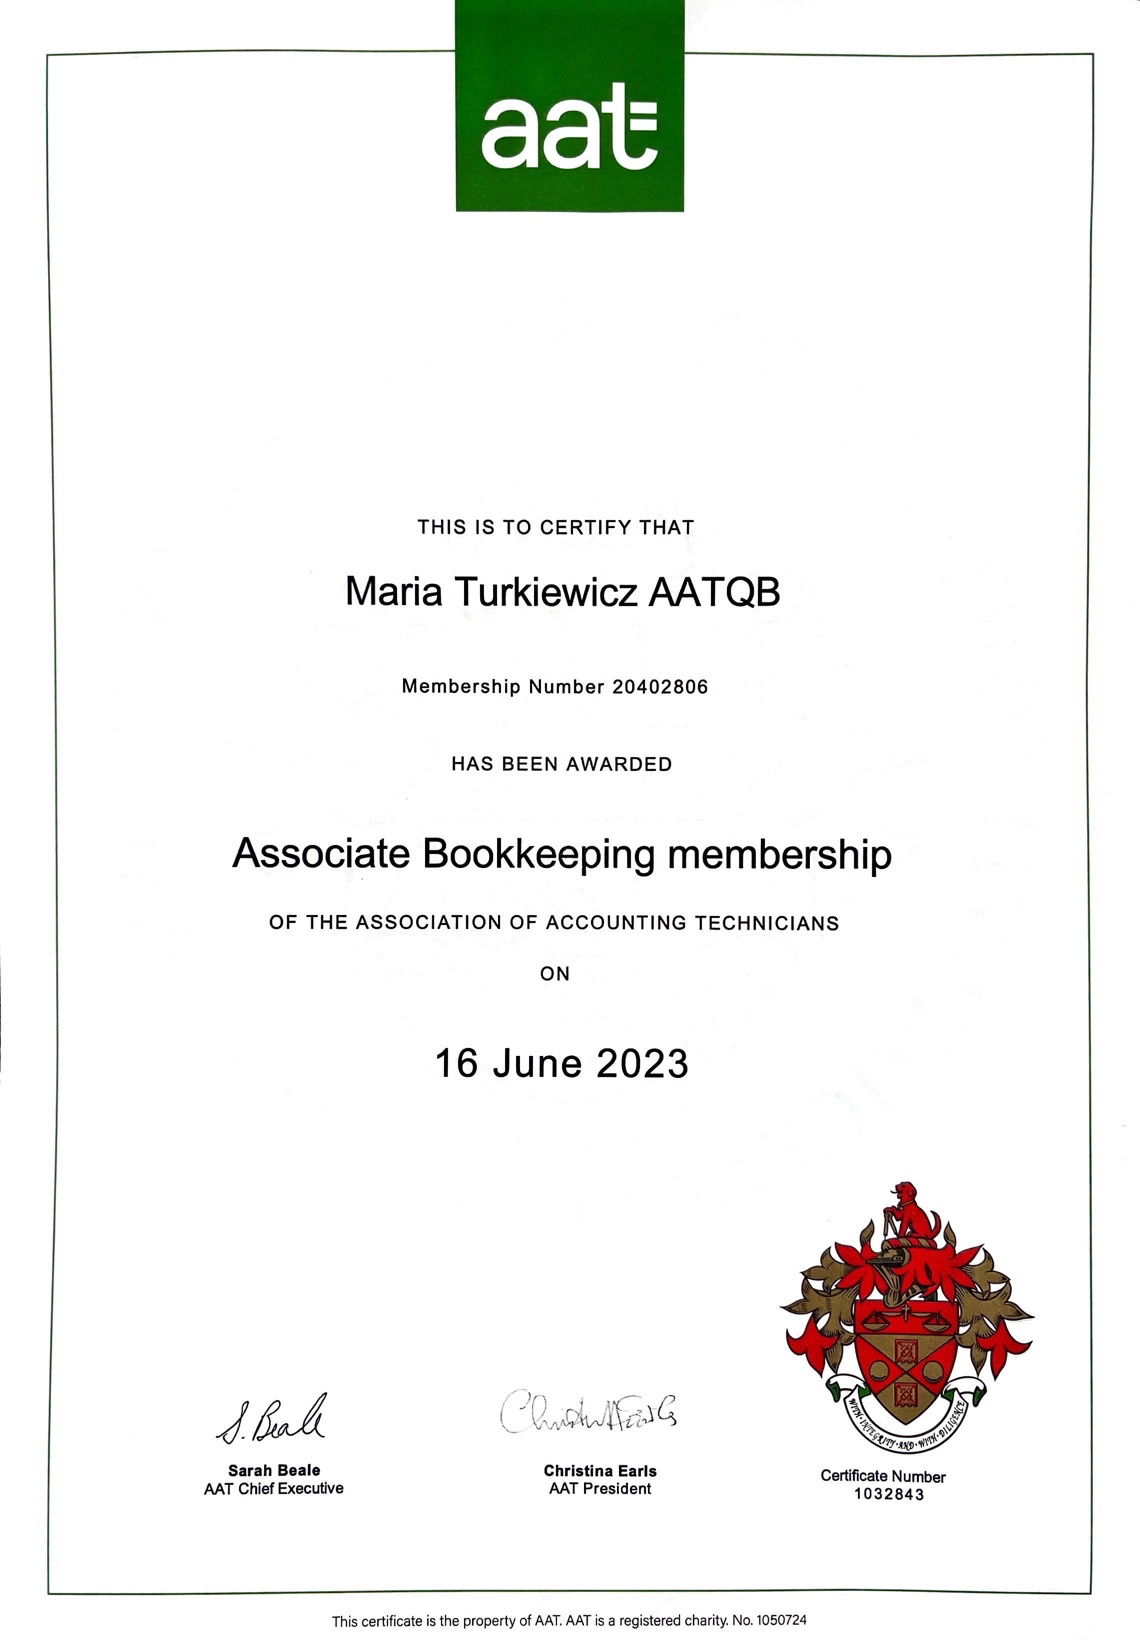 AATQB Certificate